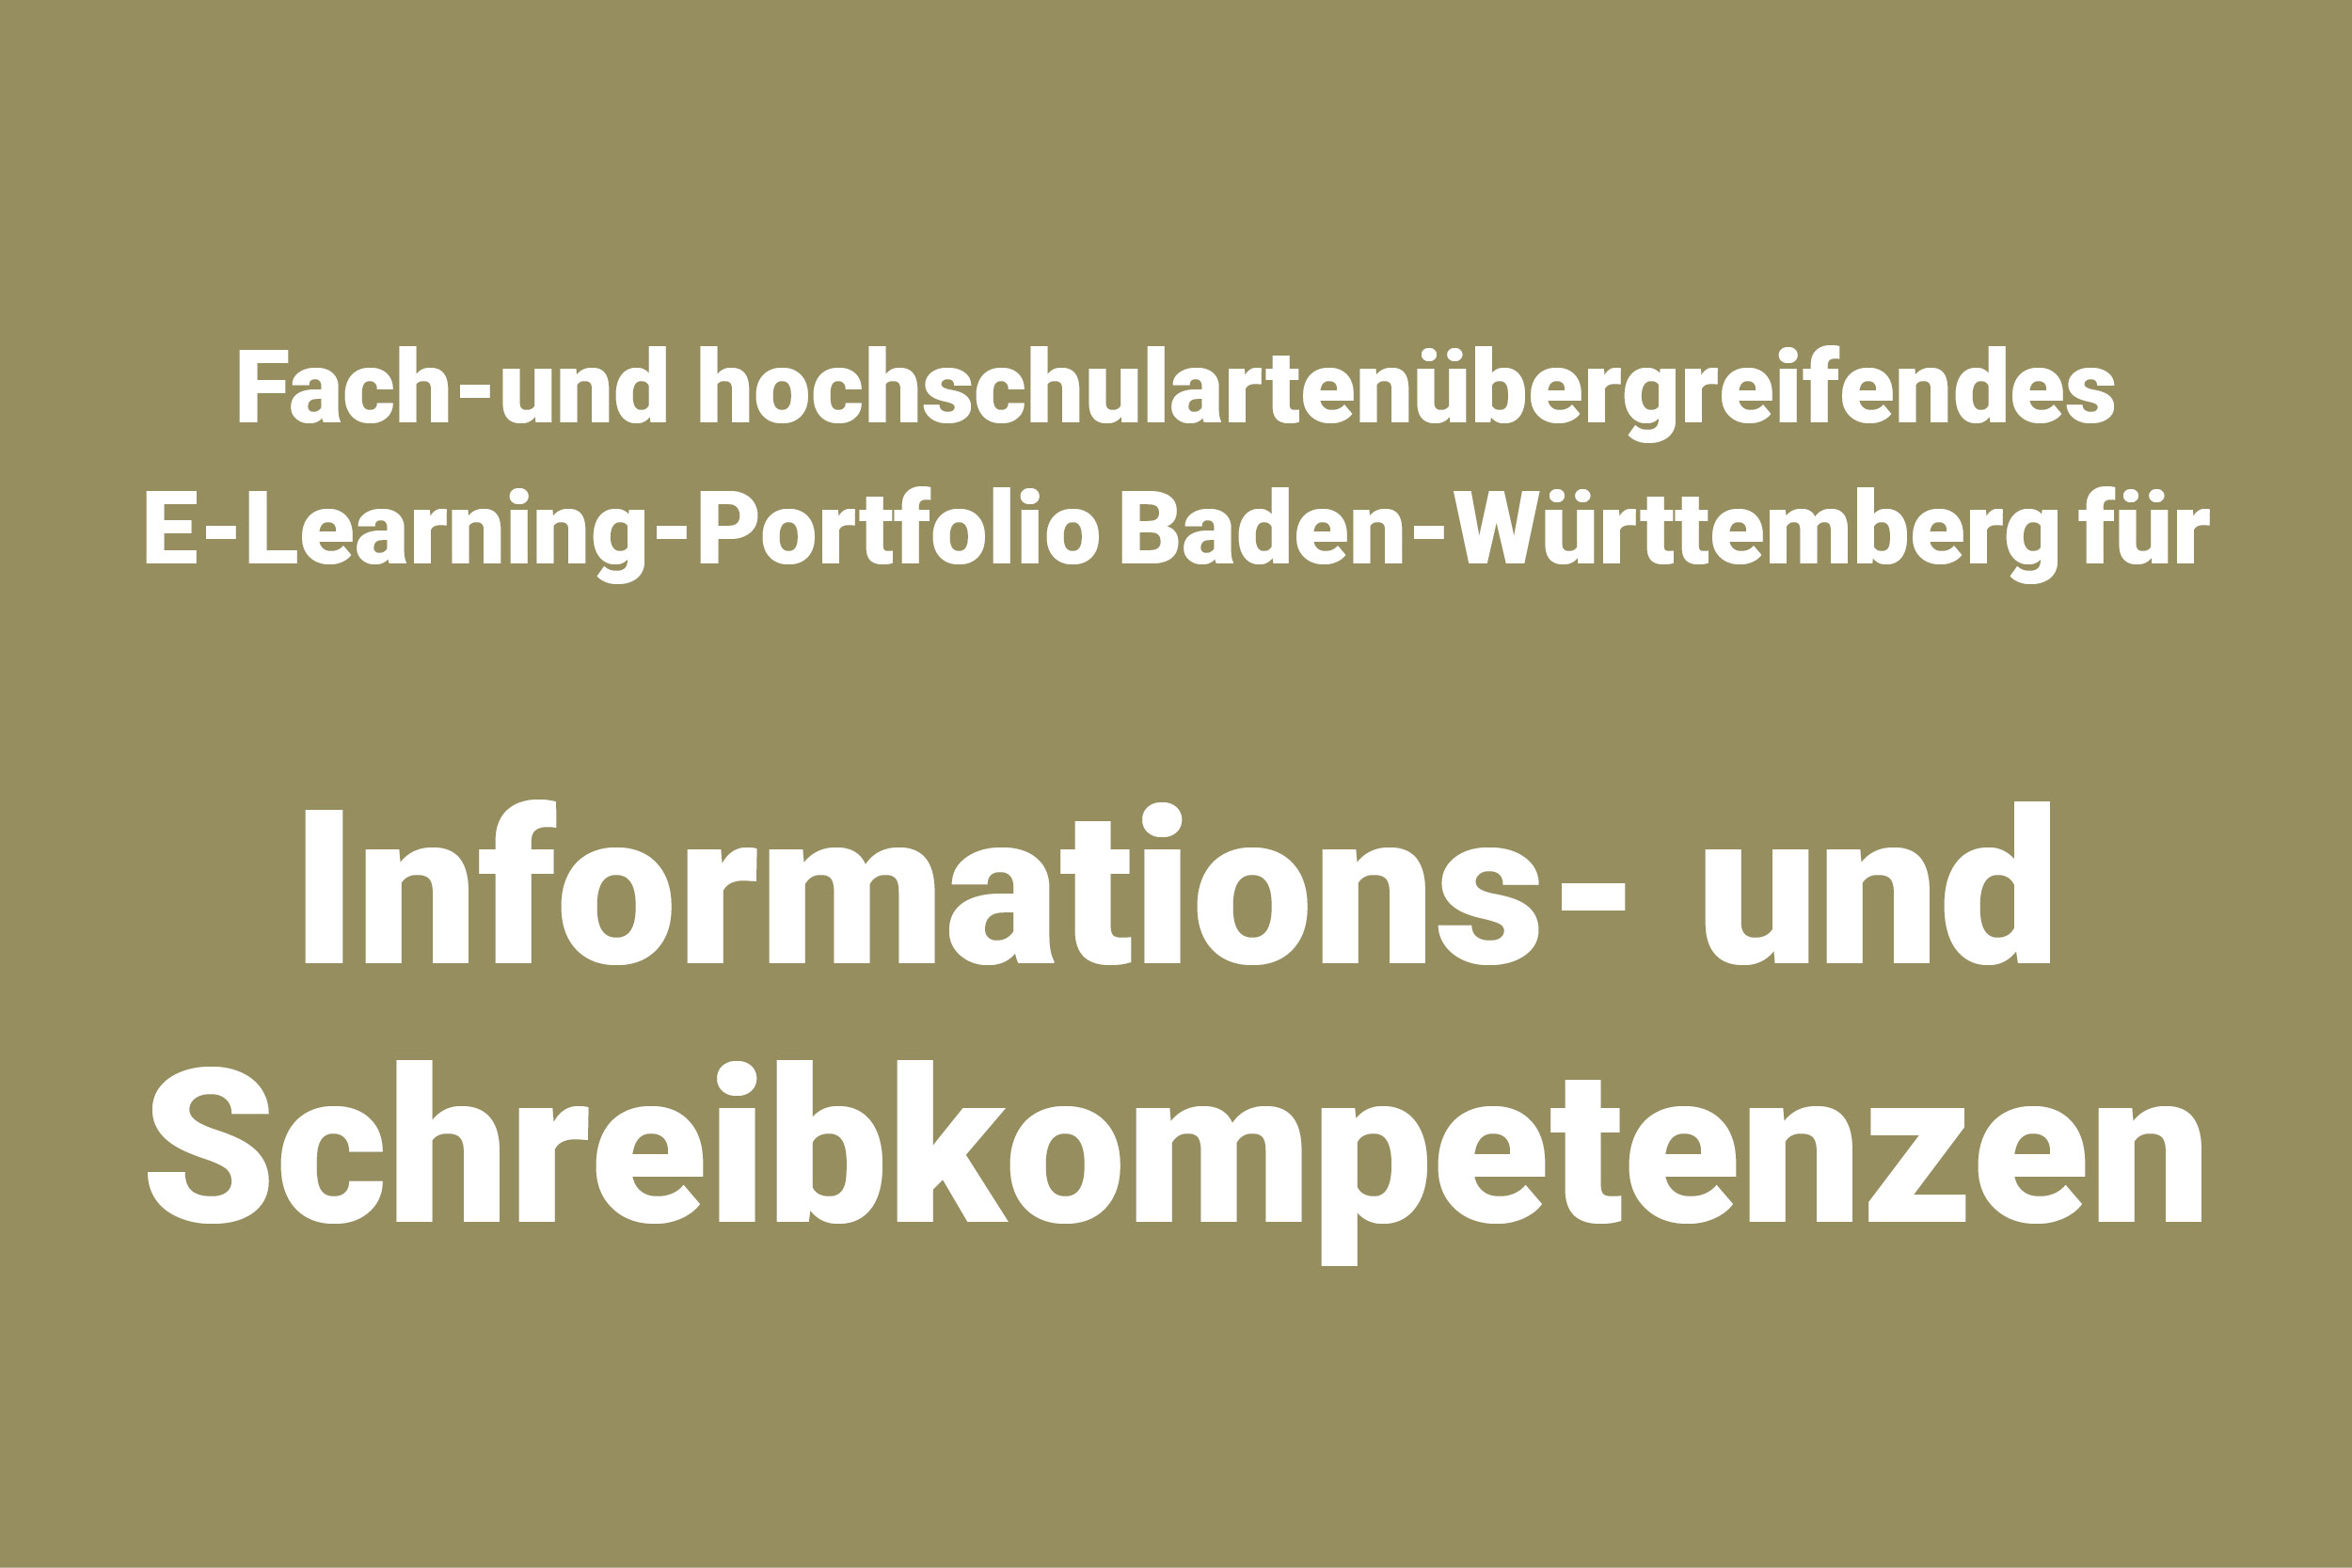 Projekt Fach-und hochschulartenübergreifendes E-Learning-Portfolio Baden-Württemberg für Informations- und Schreibkompetenzen